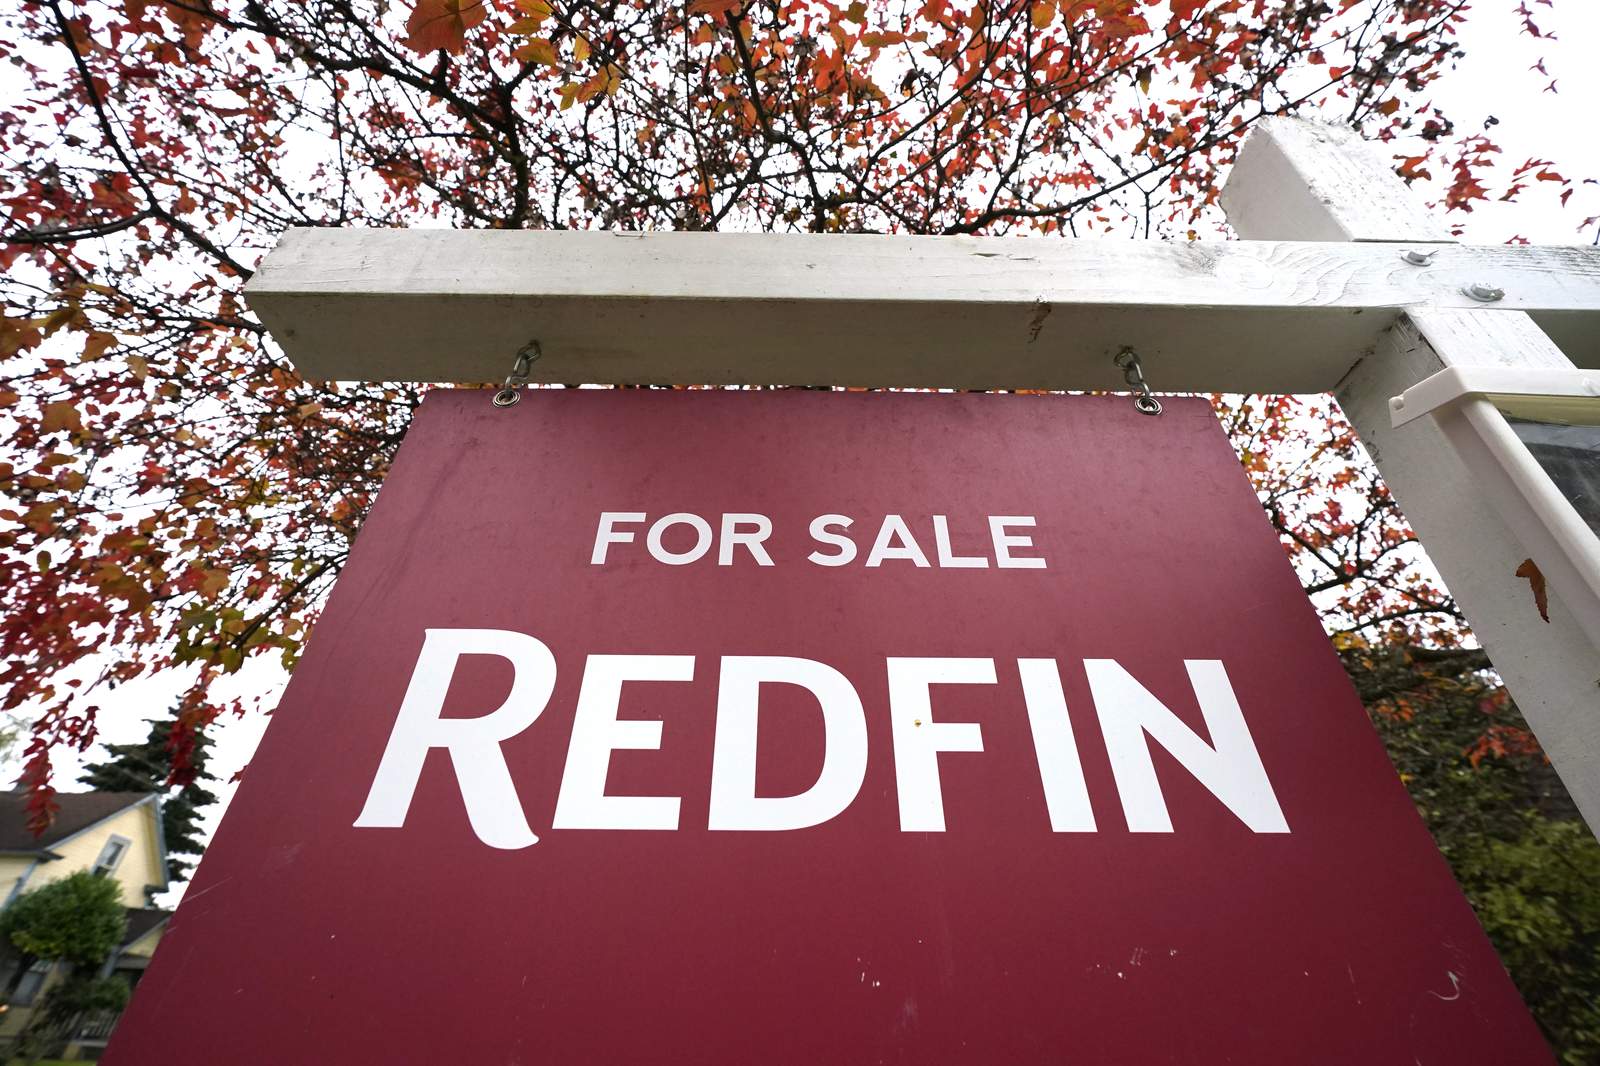 Fair housing groups: Redfin 'redlines' minority communities